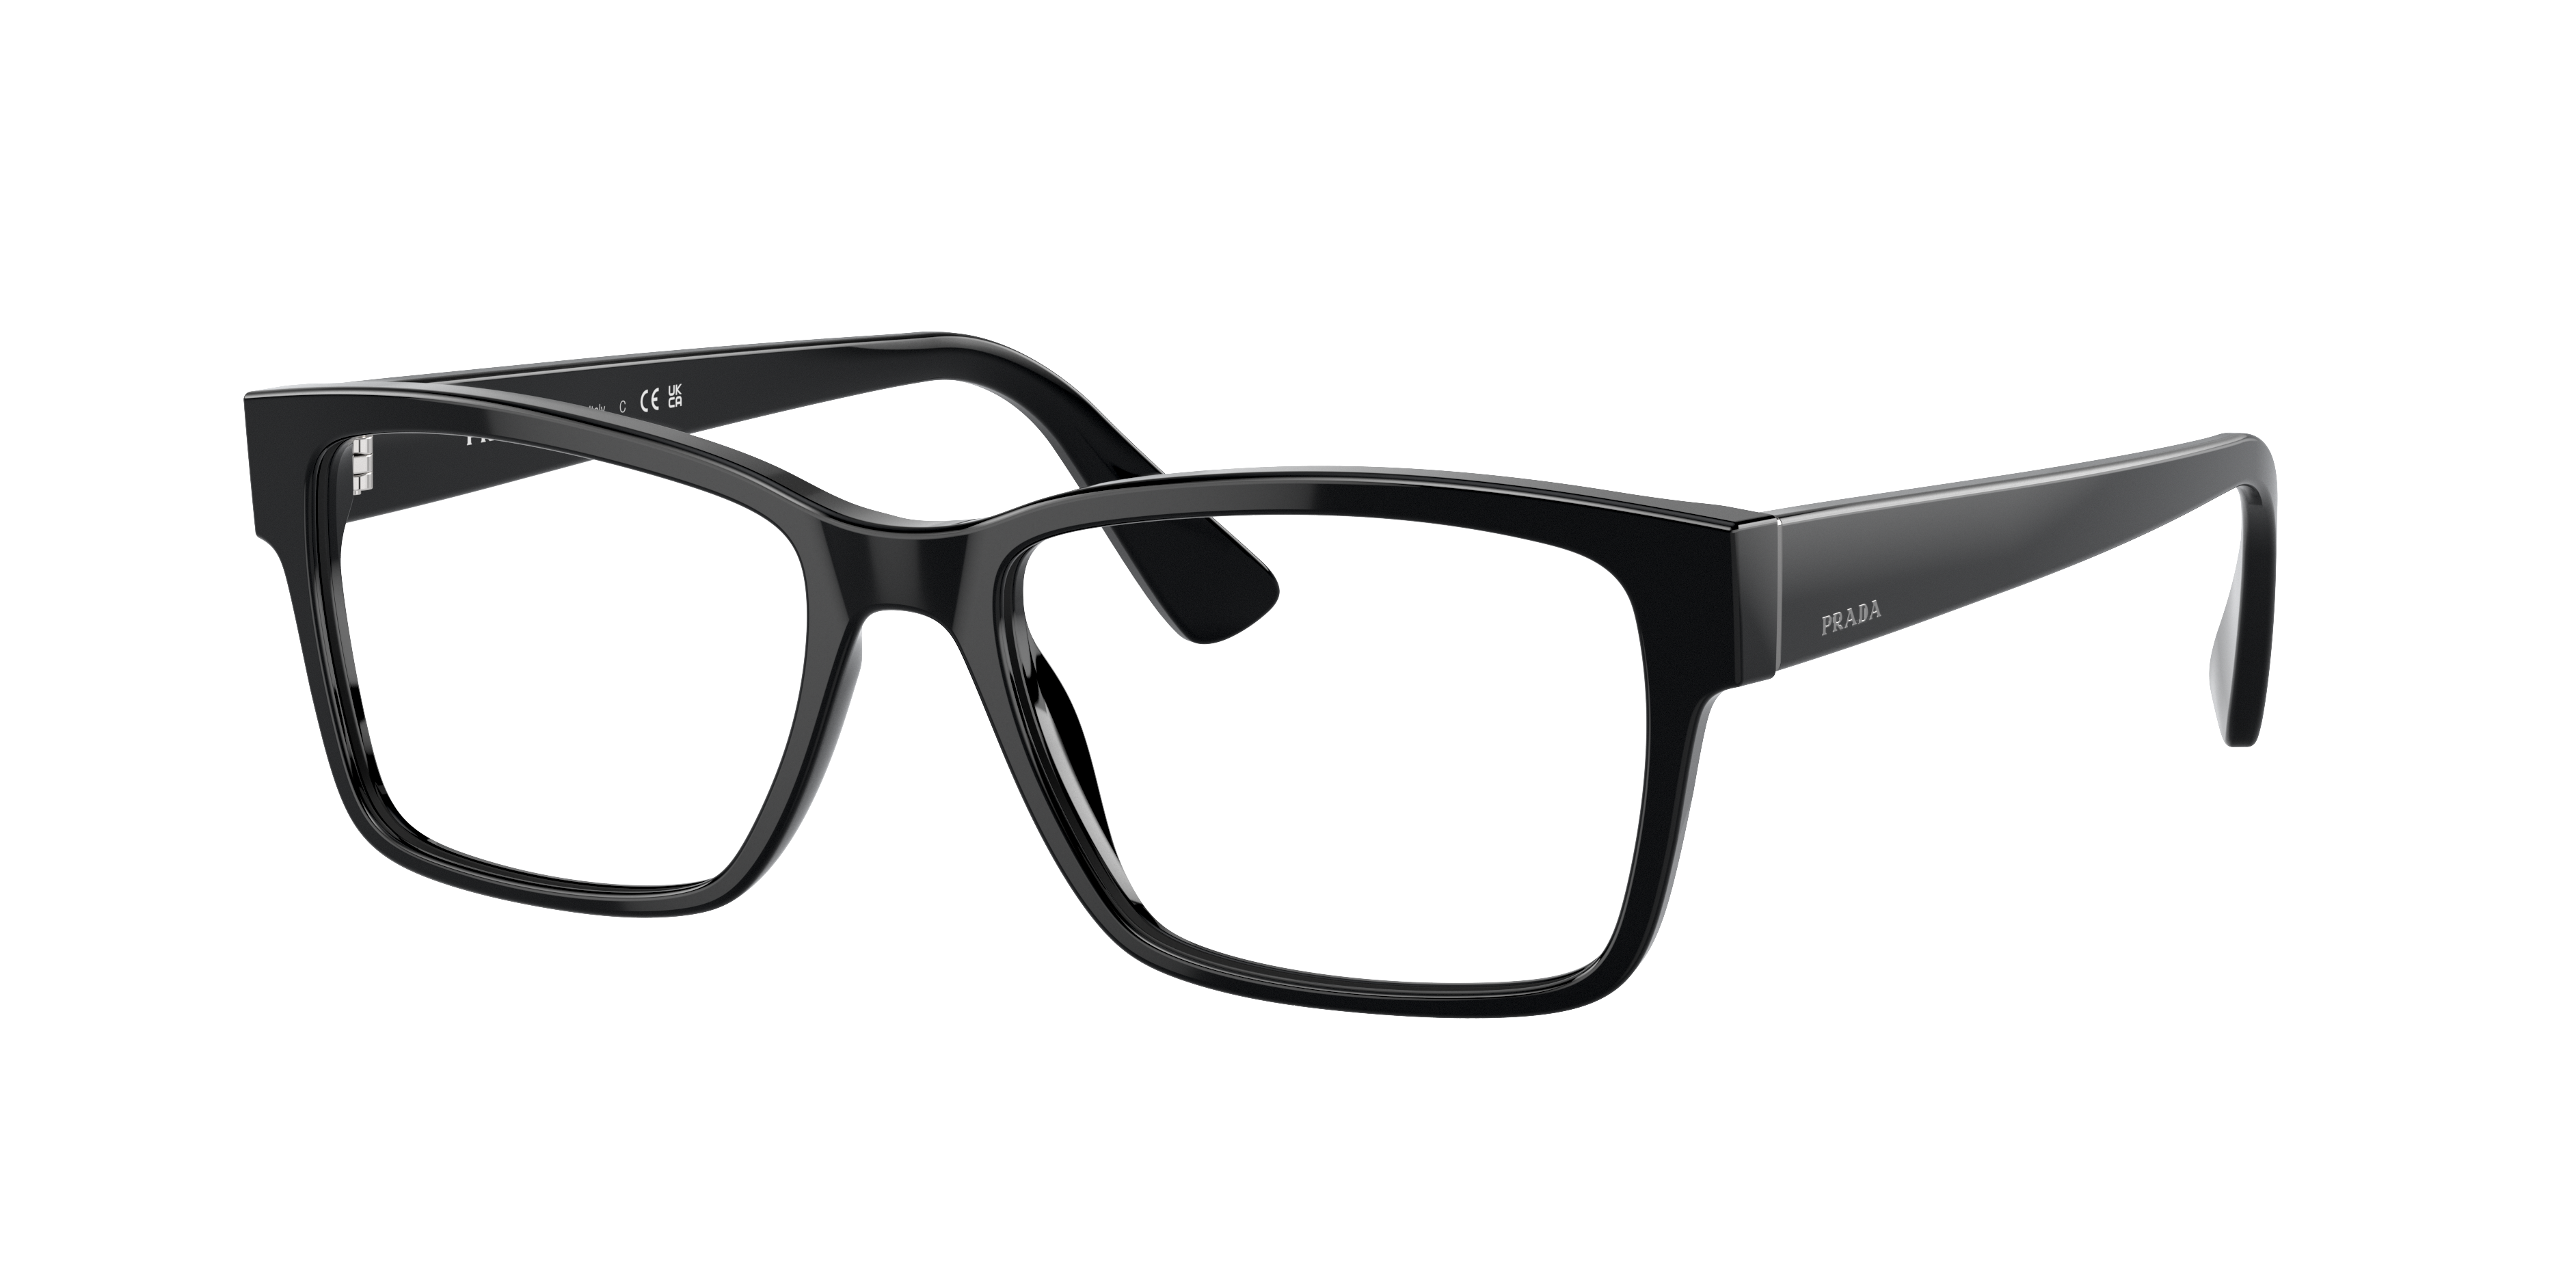 חפץ ארטילריה אחר prada cat eye glasses lenscrafters 